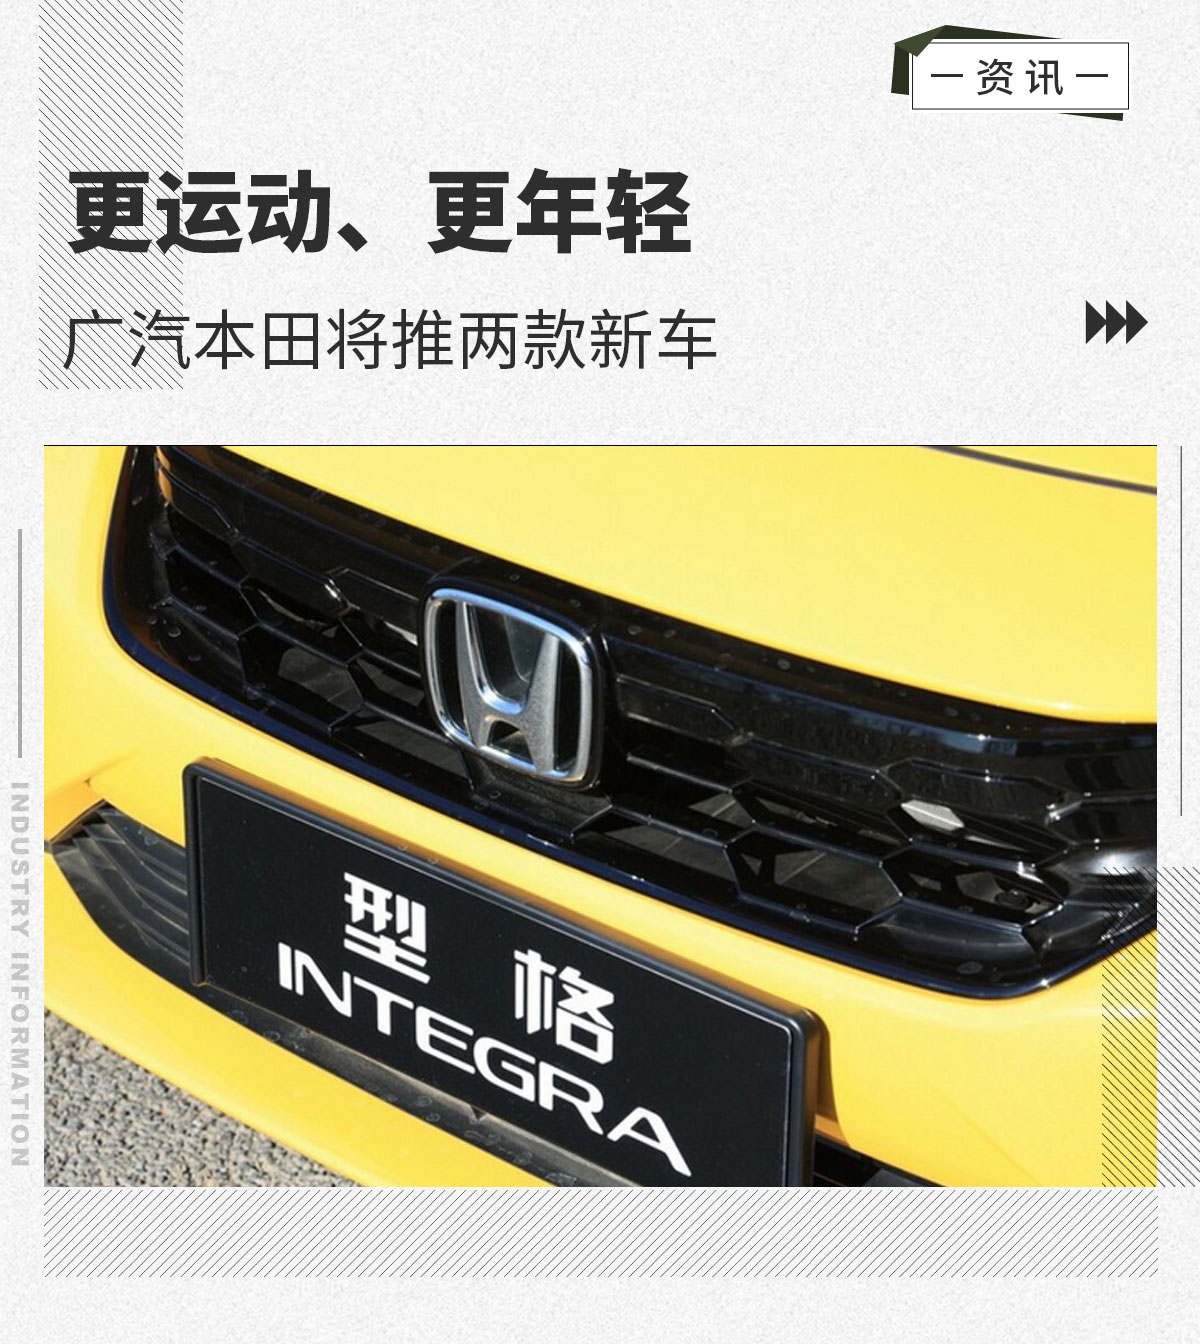 广汽本田将推两款新车 两厢版型格及一款全新SUV